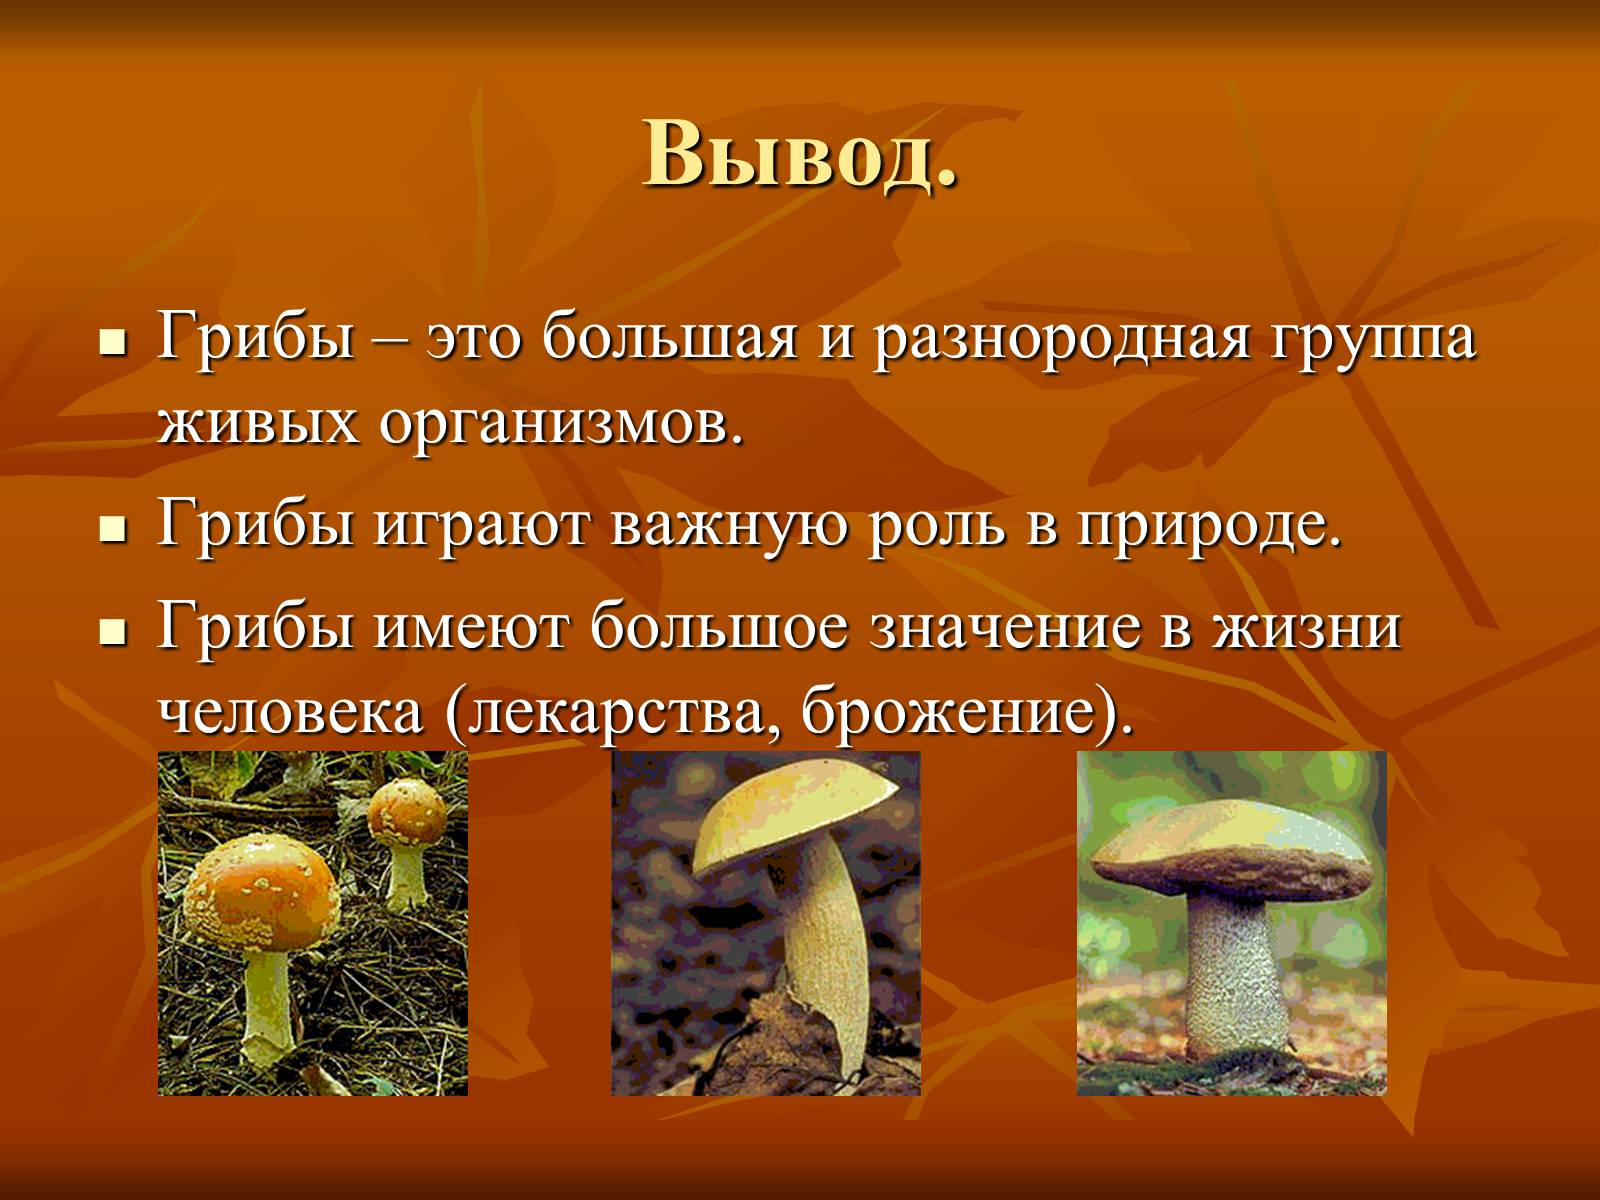 Царство грибов в жизни человека